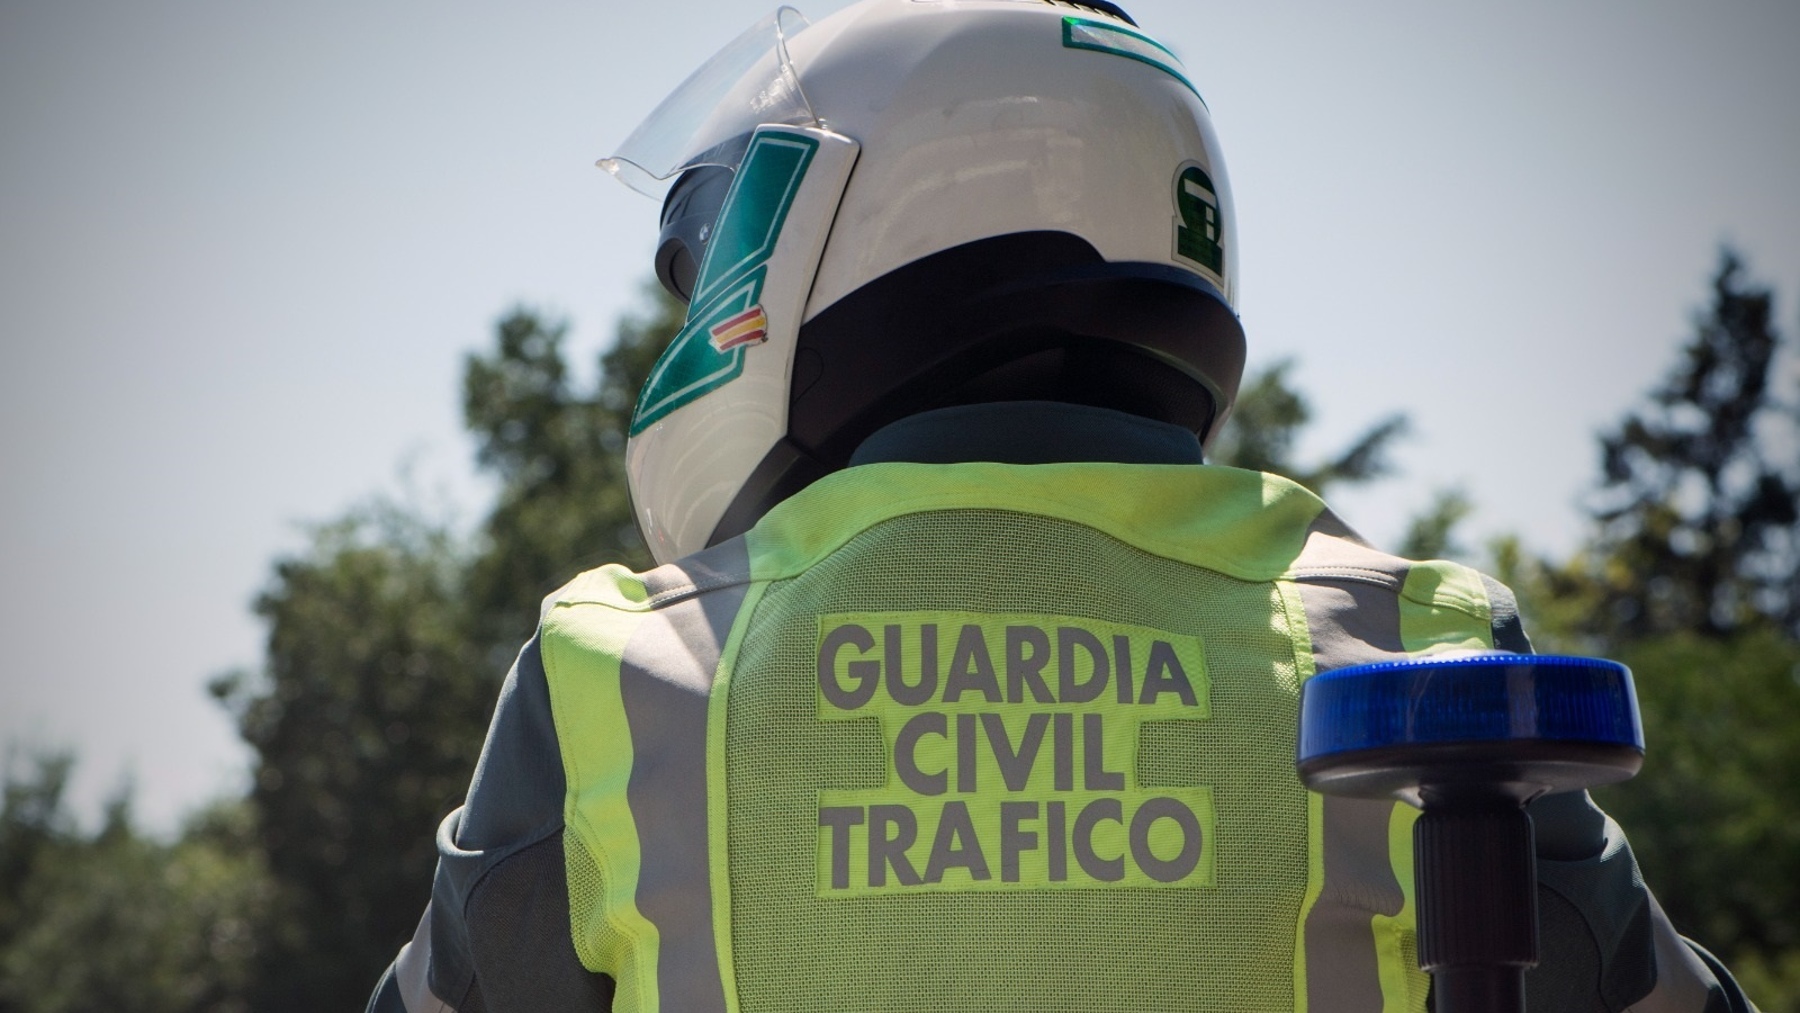 Agente de la Guardia Civil de Tráfico (GUARDIA CIVIL).